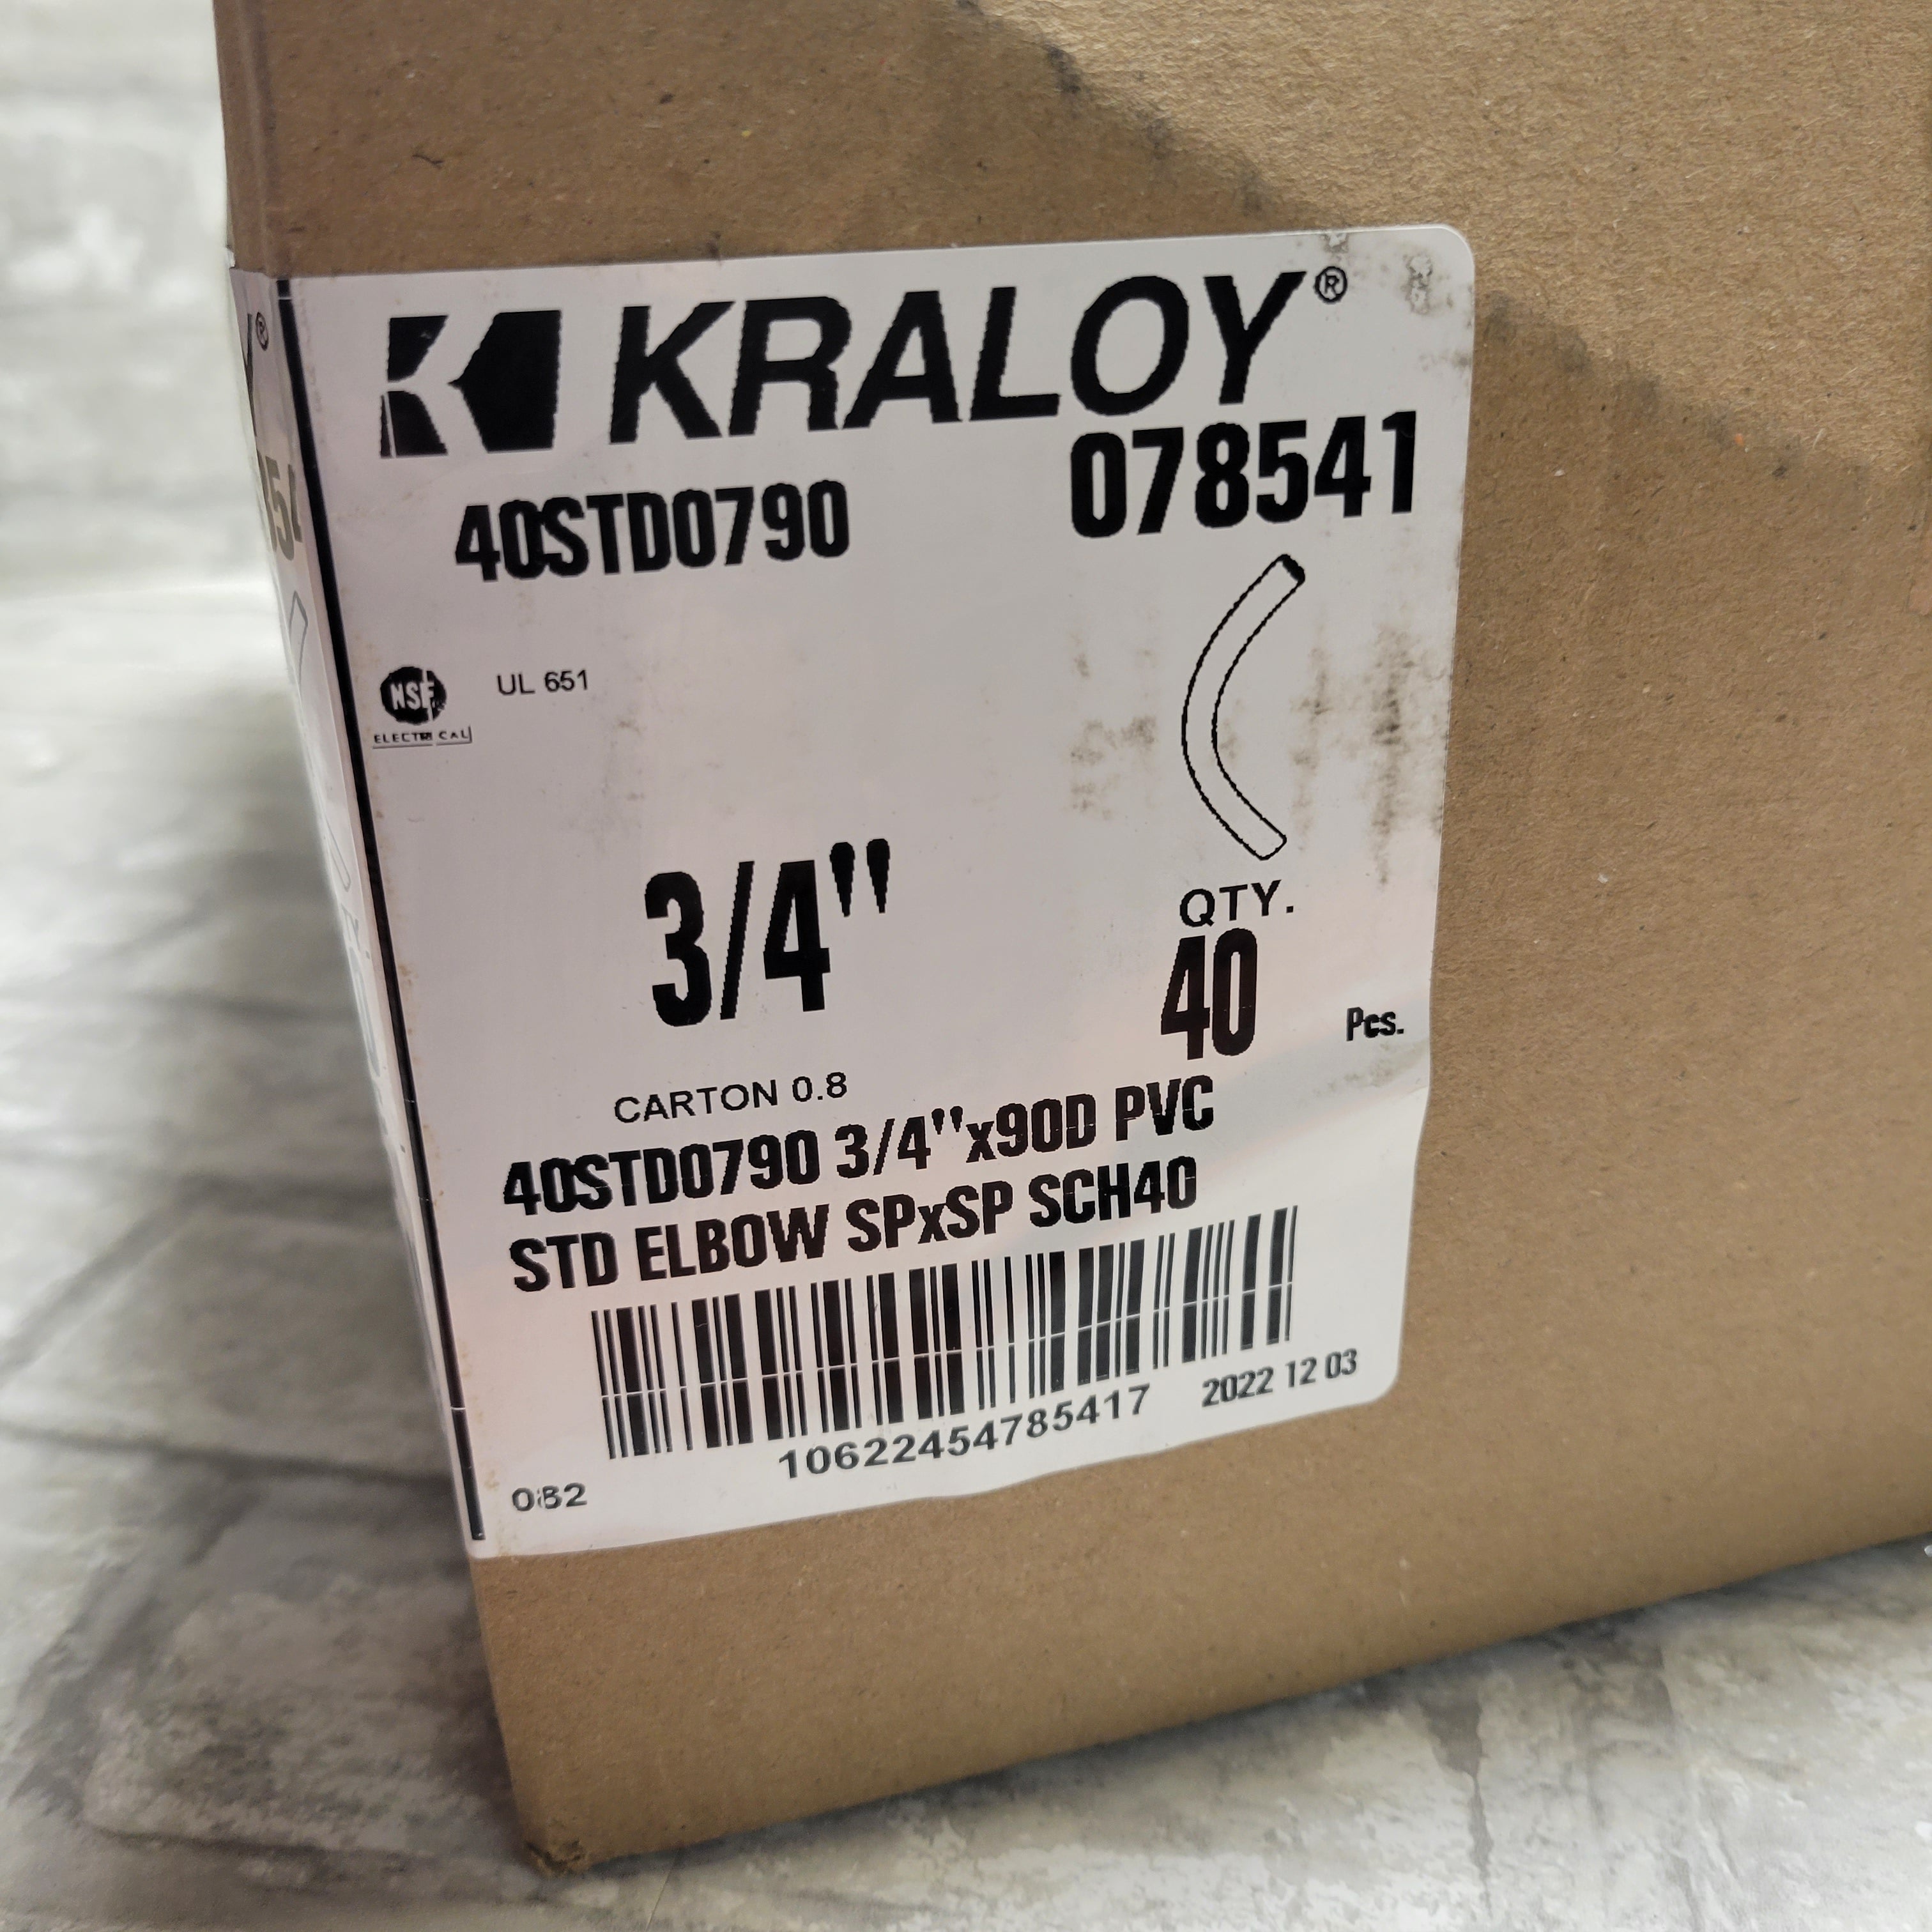 Kraloy Fittings 40STD0790 3/4